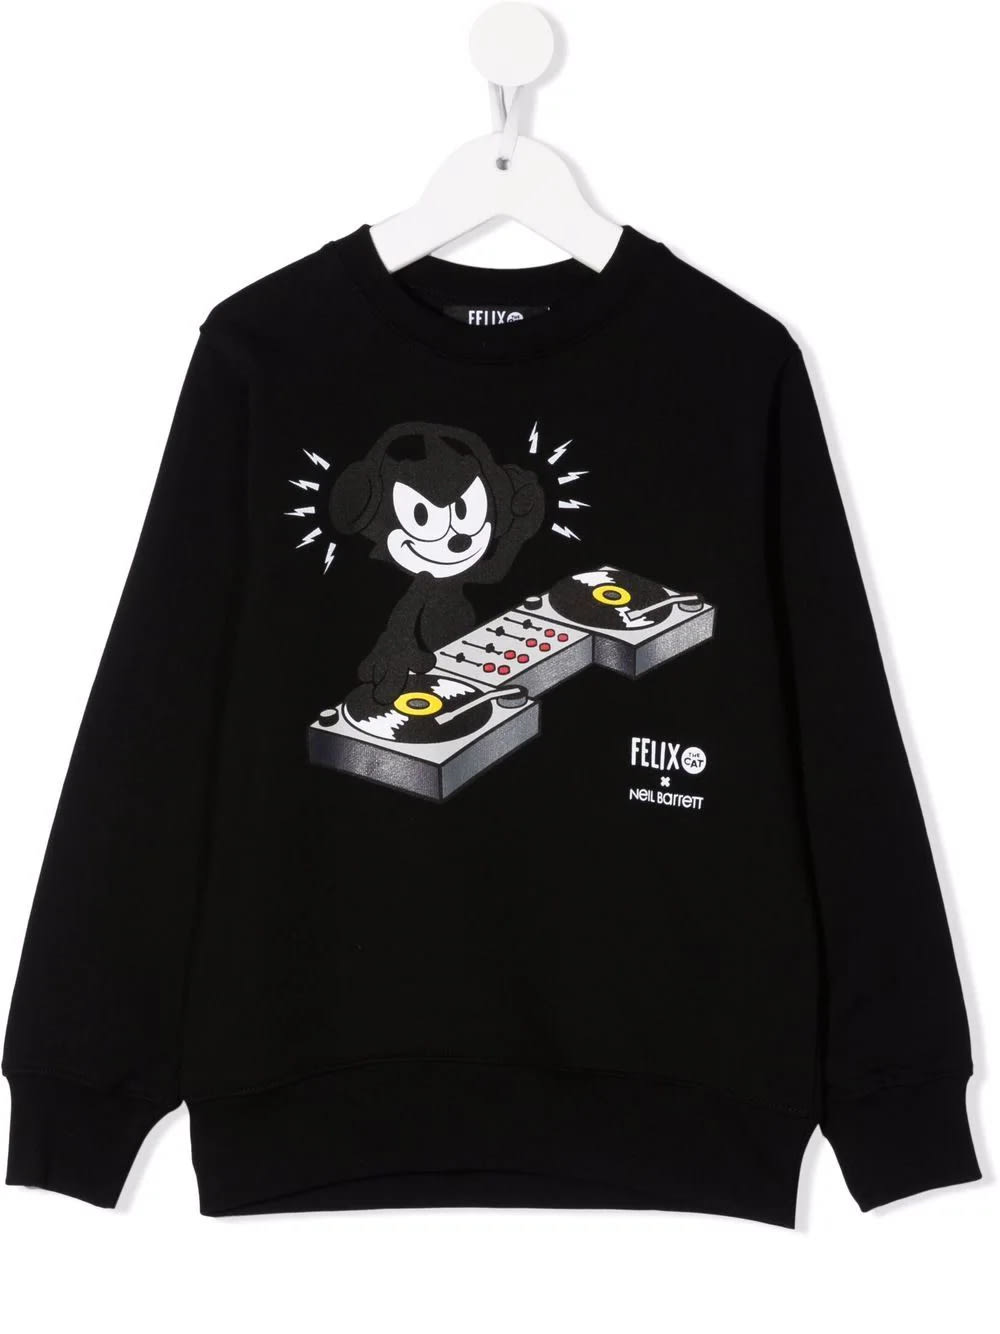 Neil Barrett Black Kids Sweatshirt With Felix The Cat Print